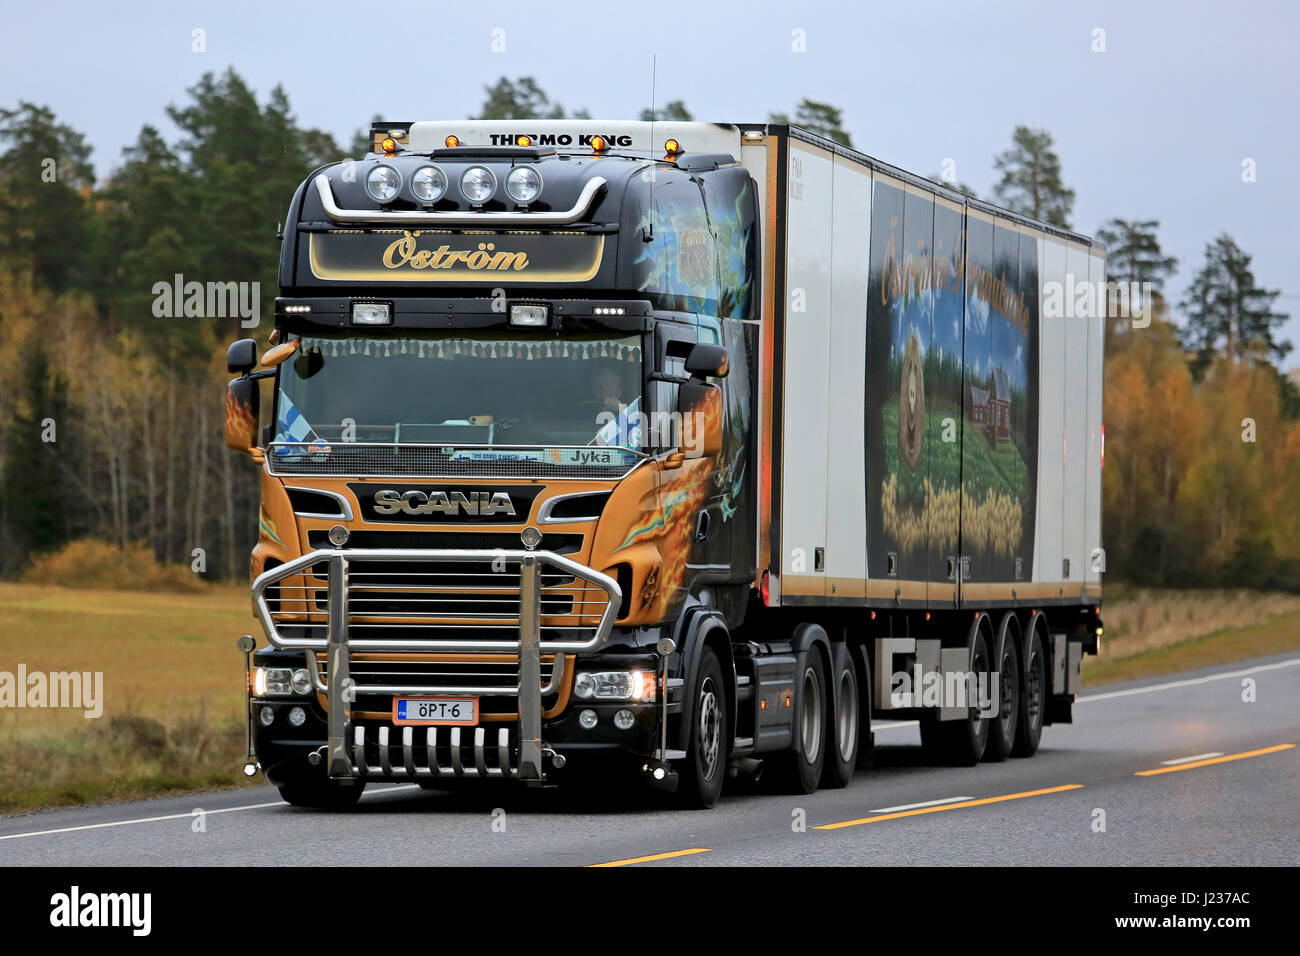 KAARINA, Finlandia - 14 ottobre 2016: Personalizzato Scania V8 camion frigorifero di Ostrom Pro Trans per il trasporto a temperatura controllata sulla strada in un Foto Stock